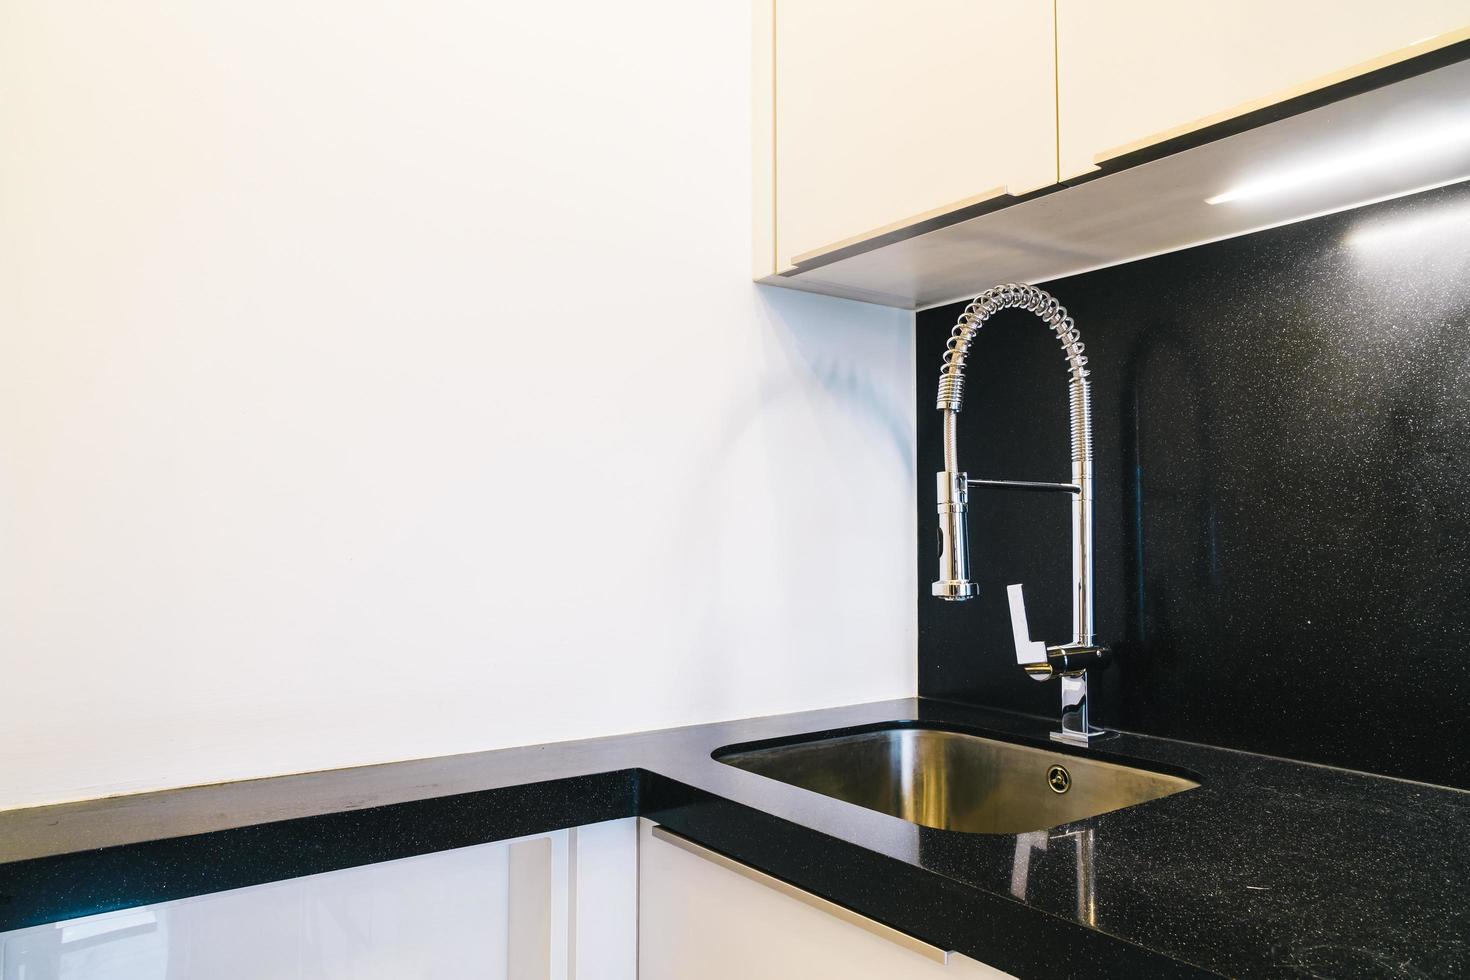 Wasserhahn- und Spülendekoration im Küchenraum foto